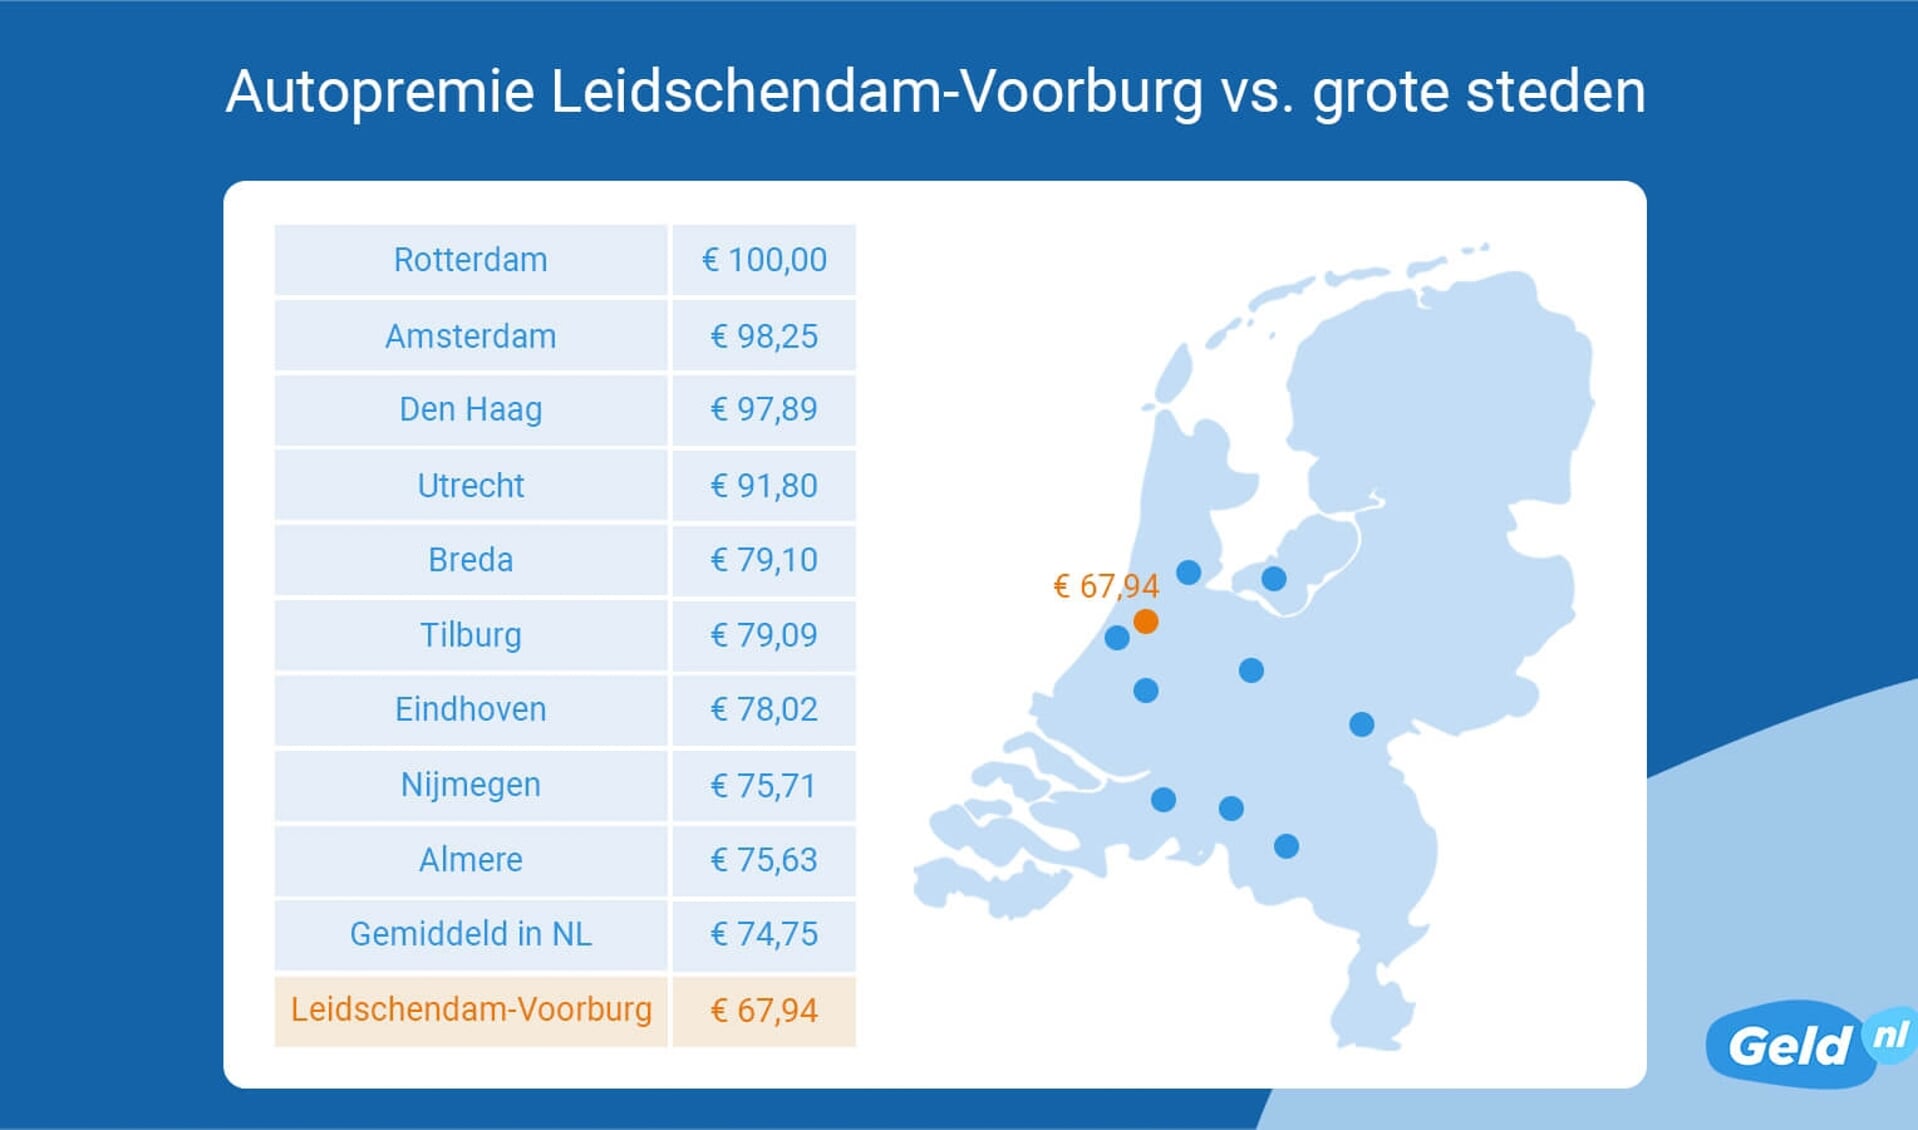 Autoverzekering in Leidschendam-Voorburg 9% goedkoper.